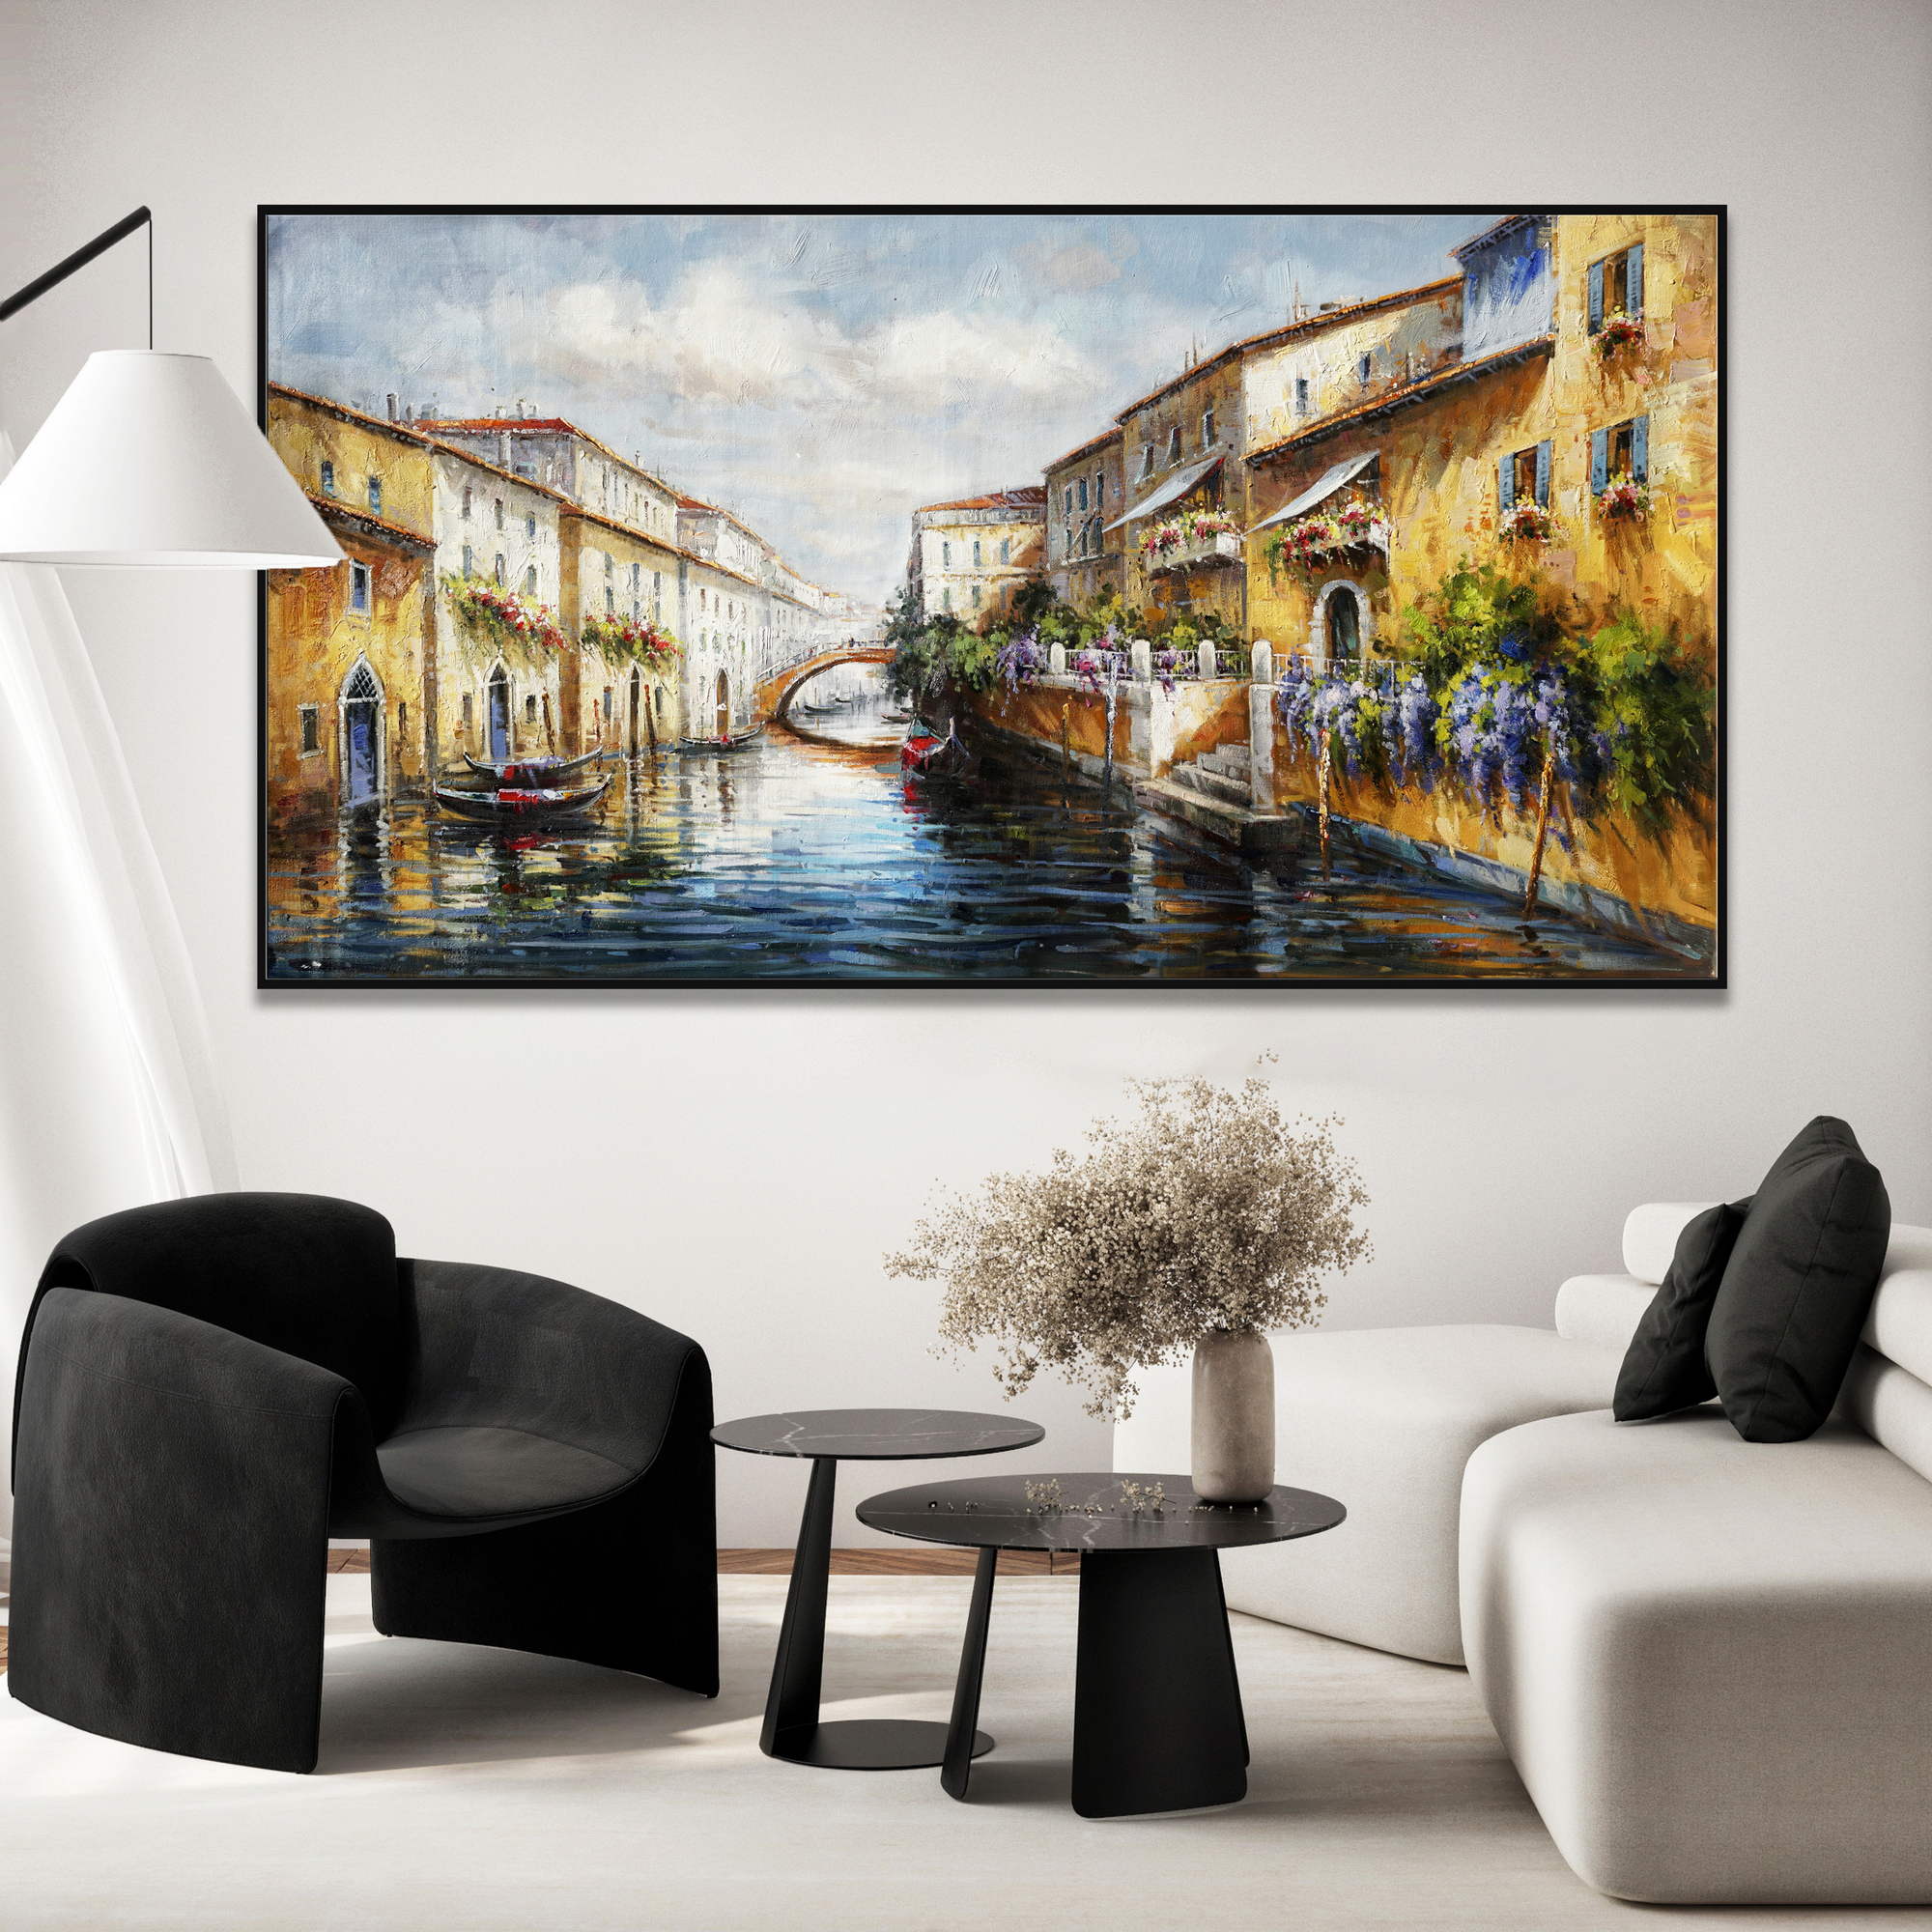 Dipinto di un canale a Venezia con barche e palazzi storici con balconi fioriti